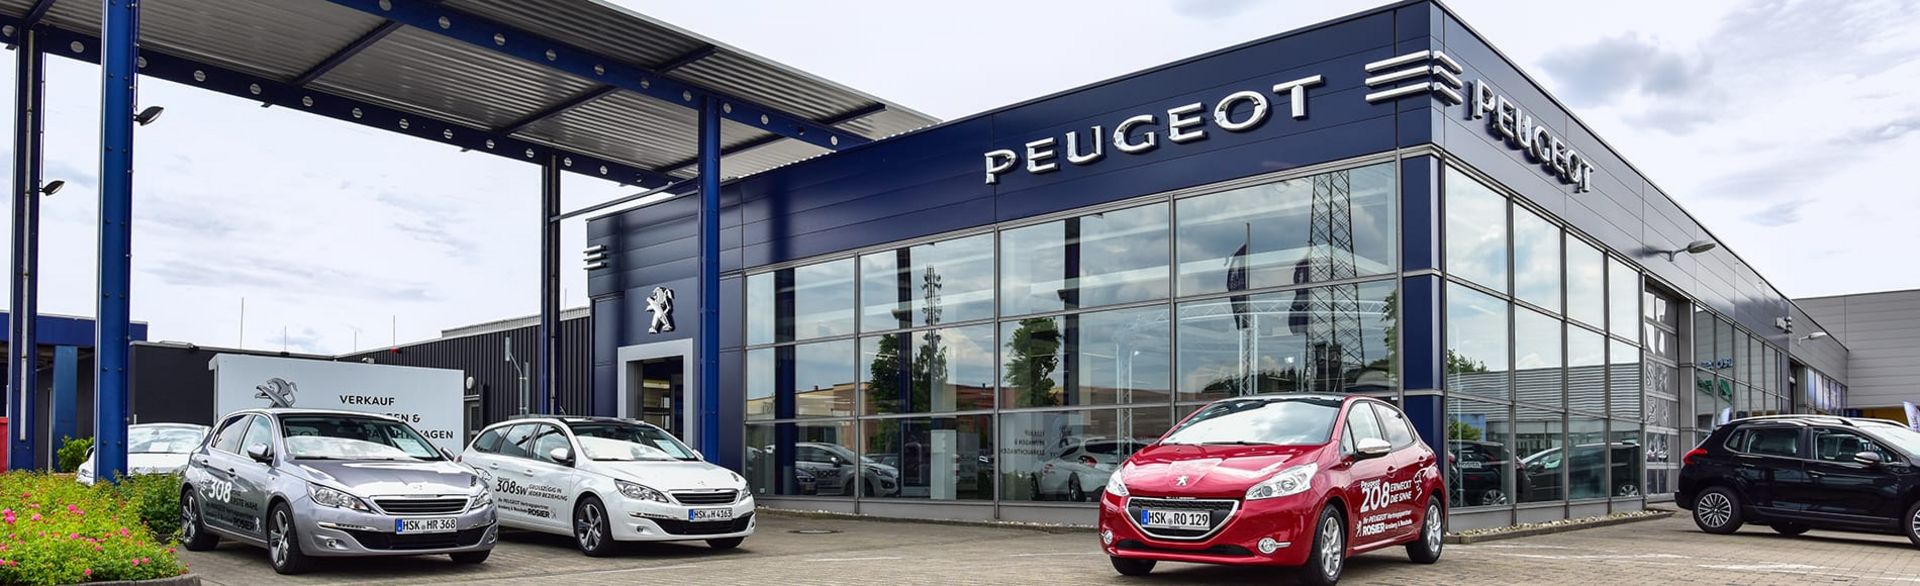 Peugeot Arnsberg 2015 1900x580